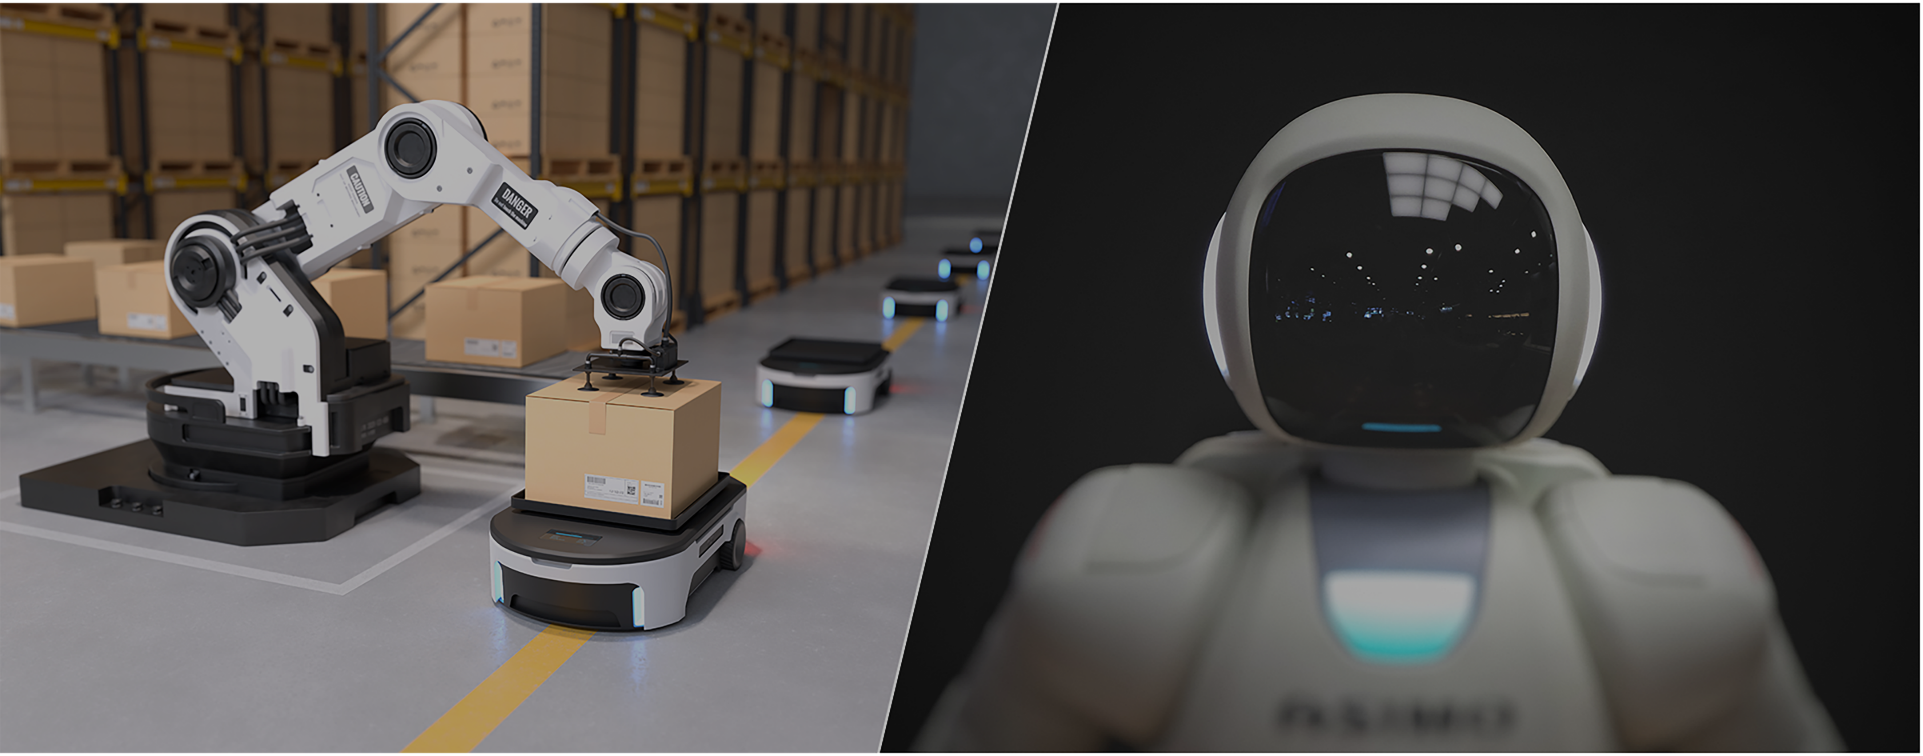 2D LiDAR for Robotics Industry